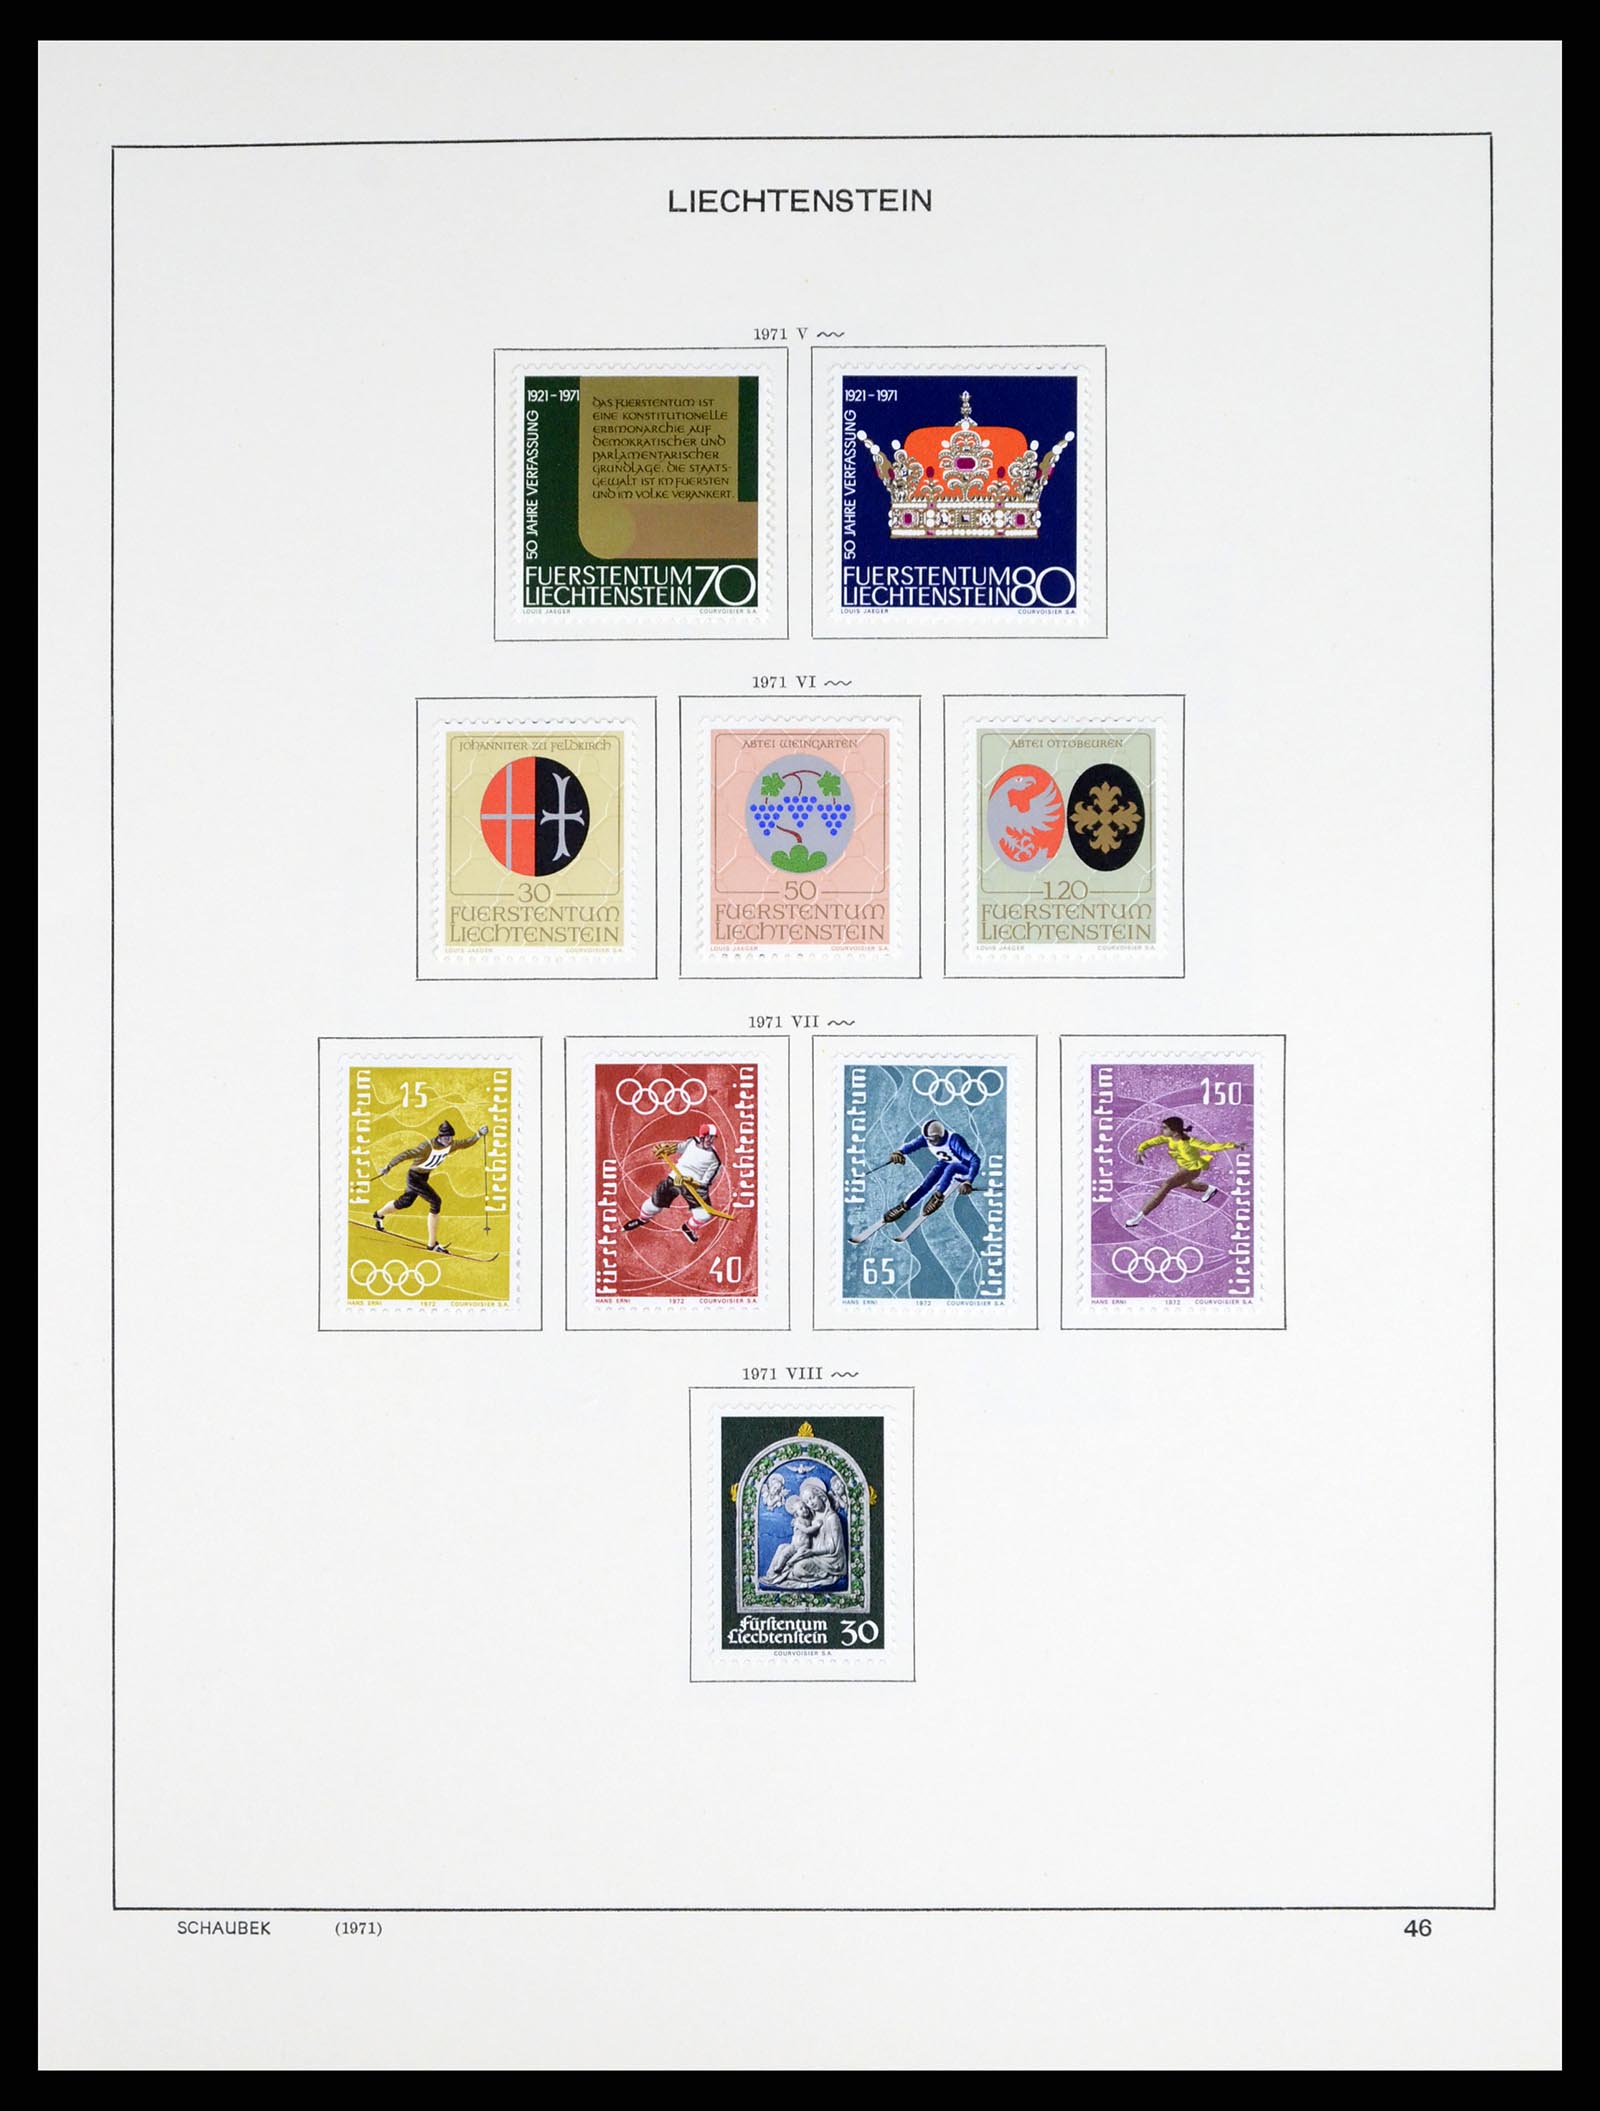 37547 057 - Postzegelverzameling 37547 Liechtenstein 1912-2011.